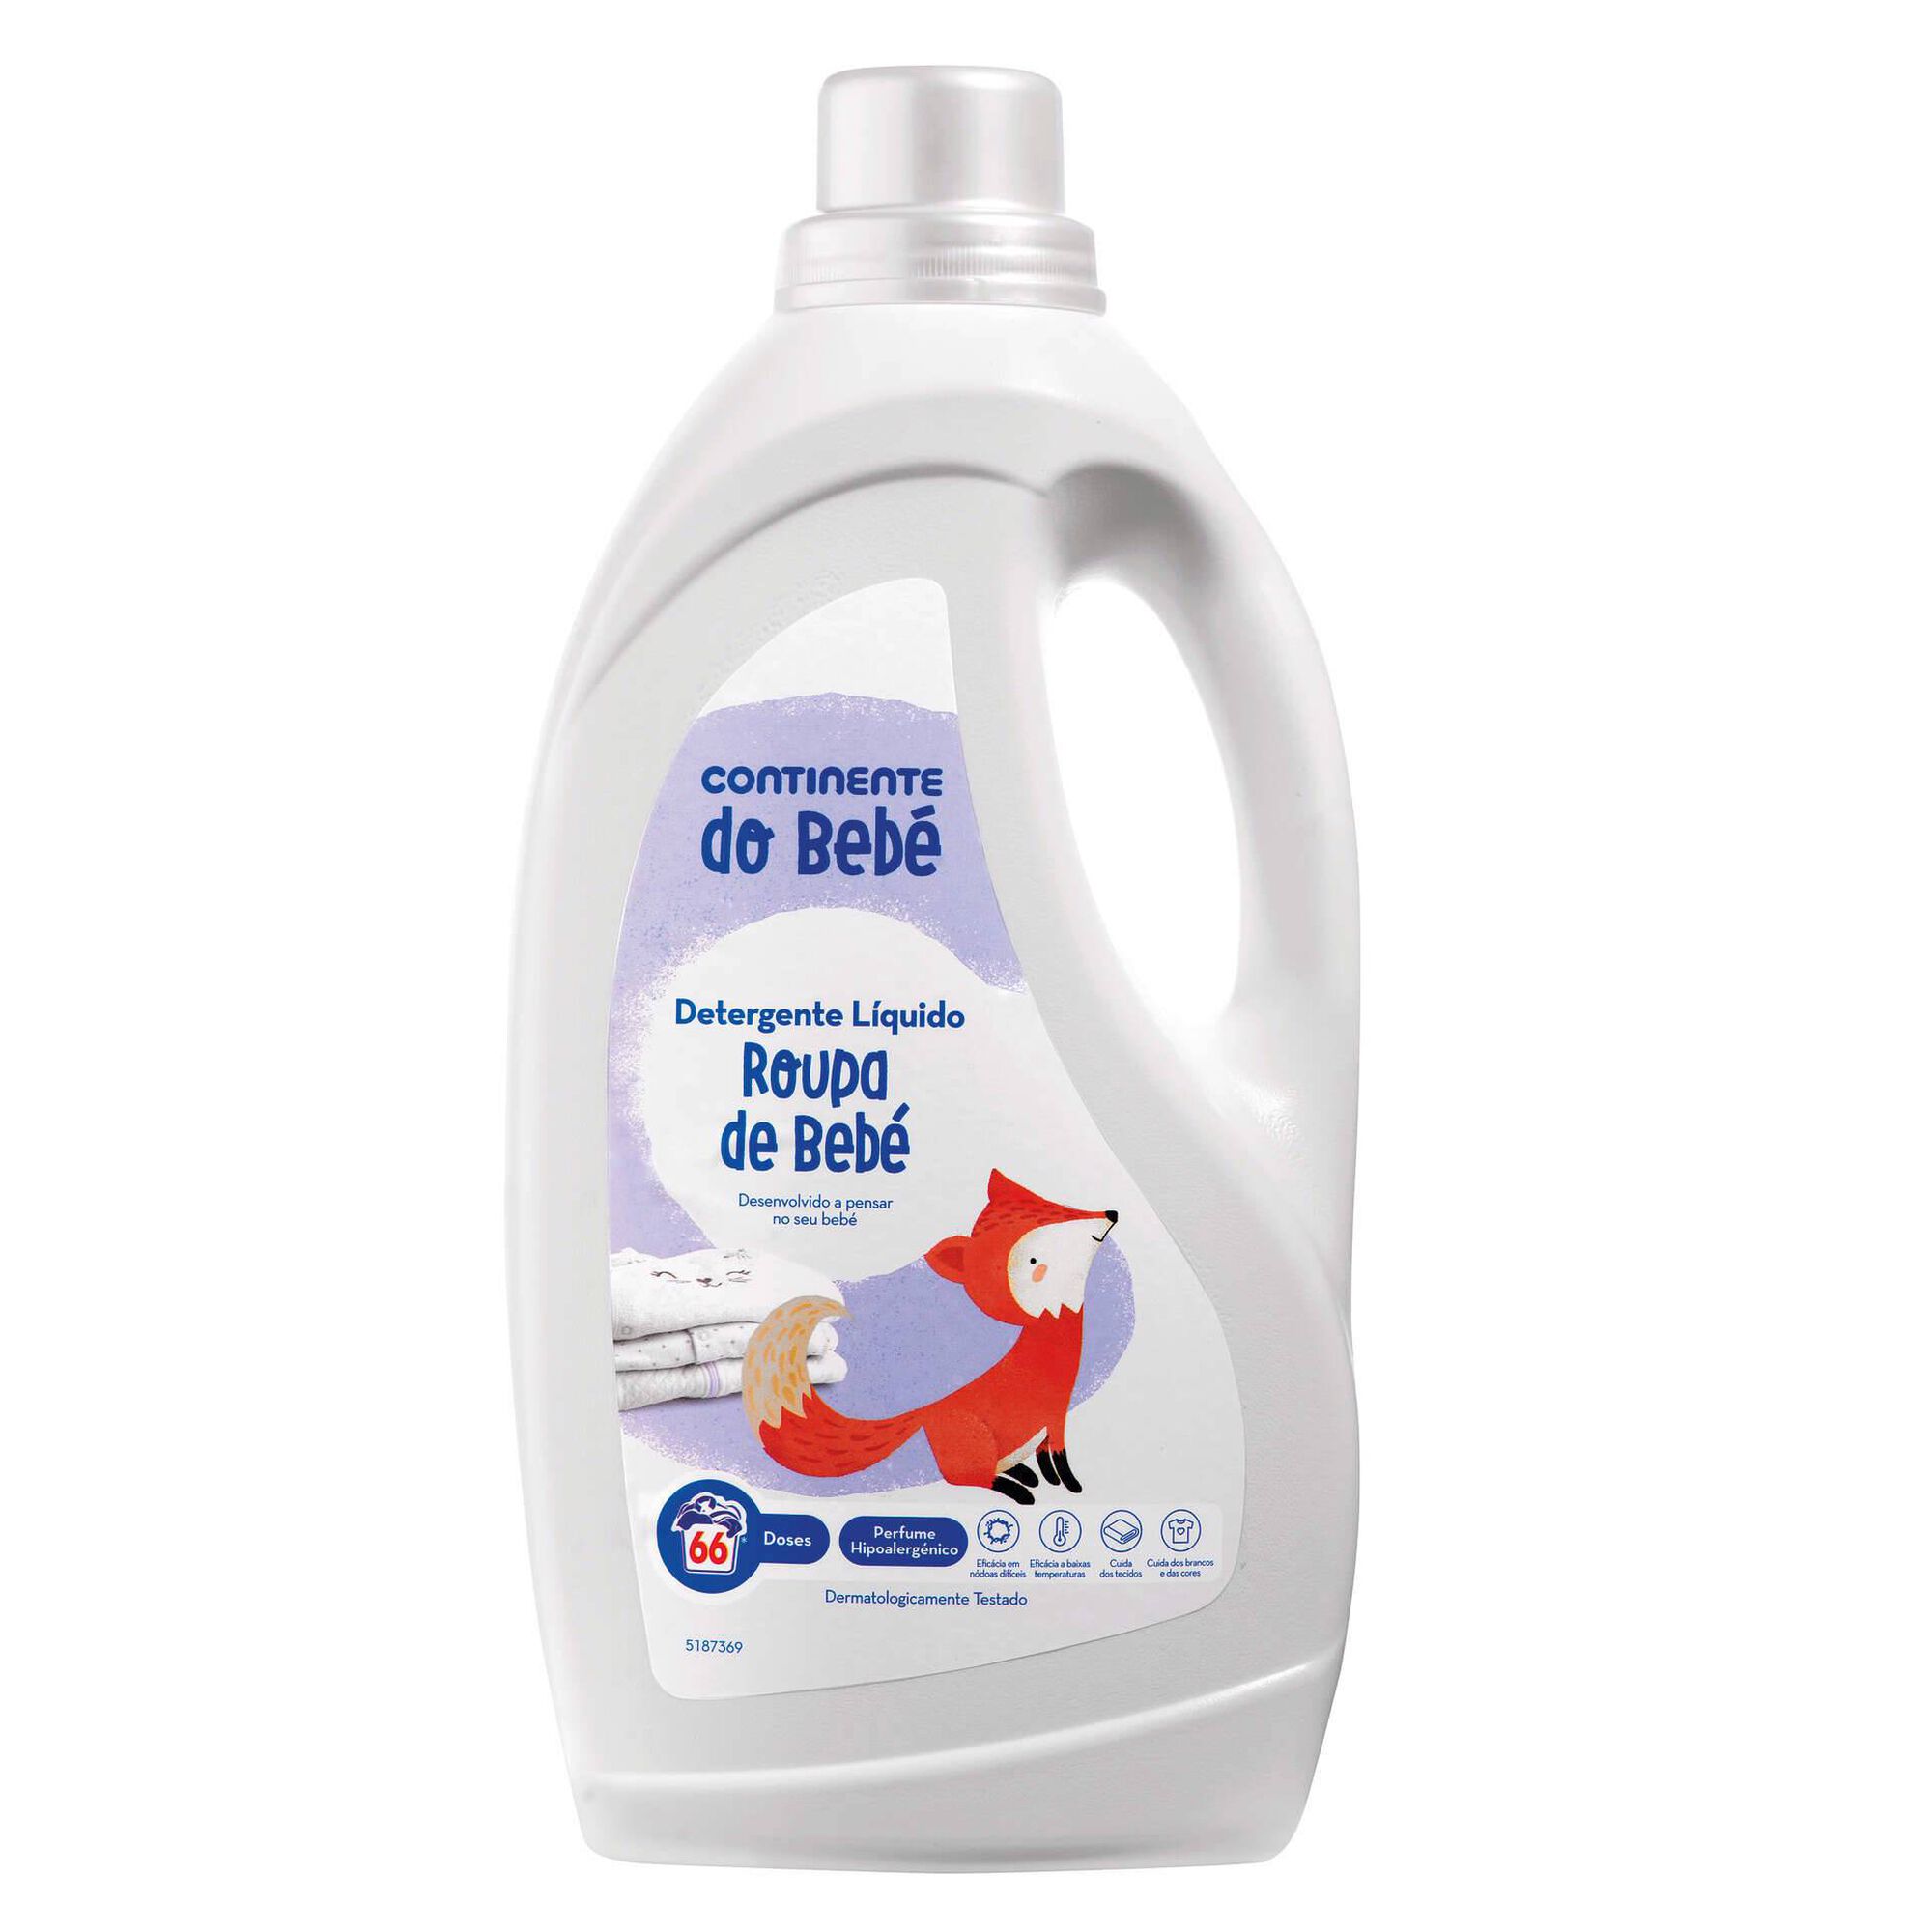 Detergente Máquina Roupa Líquido - 66 doses - Continente do Bebé